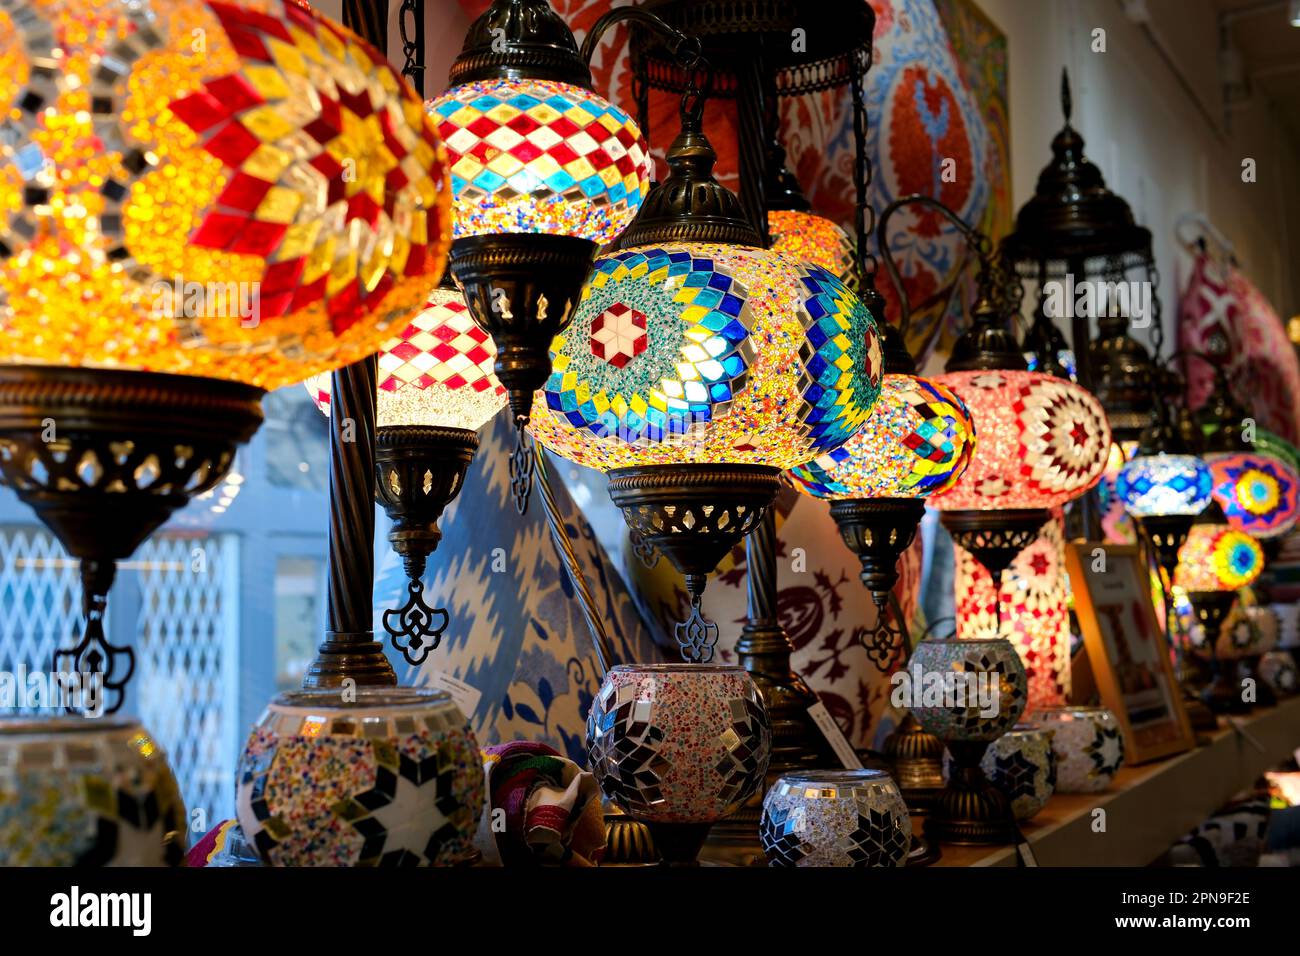 Türkische Lampen im Geschäft auf der Theke sind mehrfarbige Lampen, die  eingeschaltet sind und in einem Mosaik leuchten, das im Rahmen schimmert  Stockfotografie - Alamy